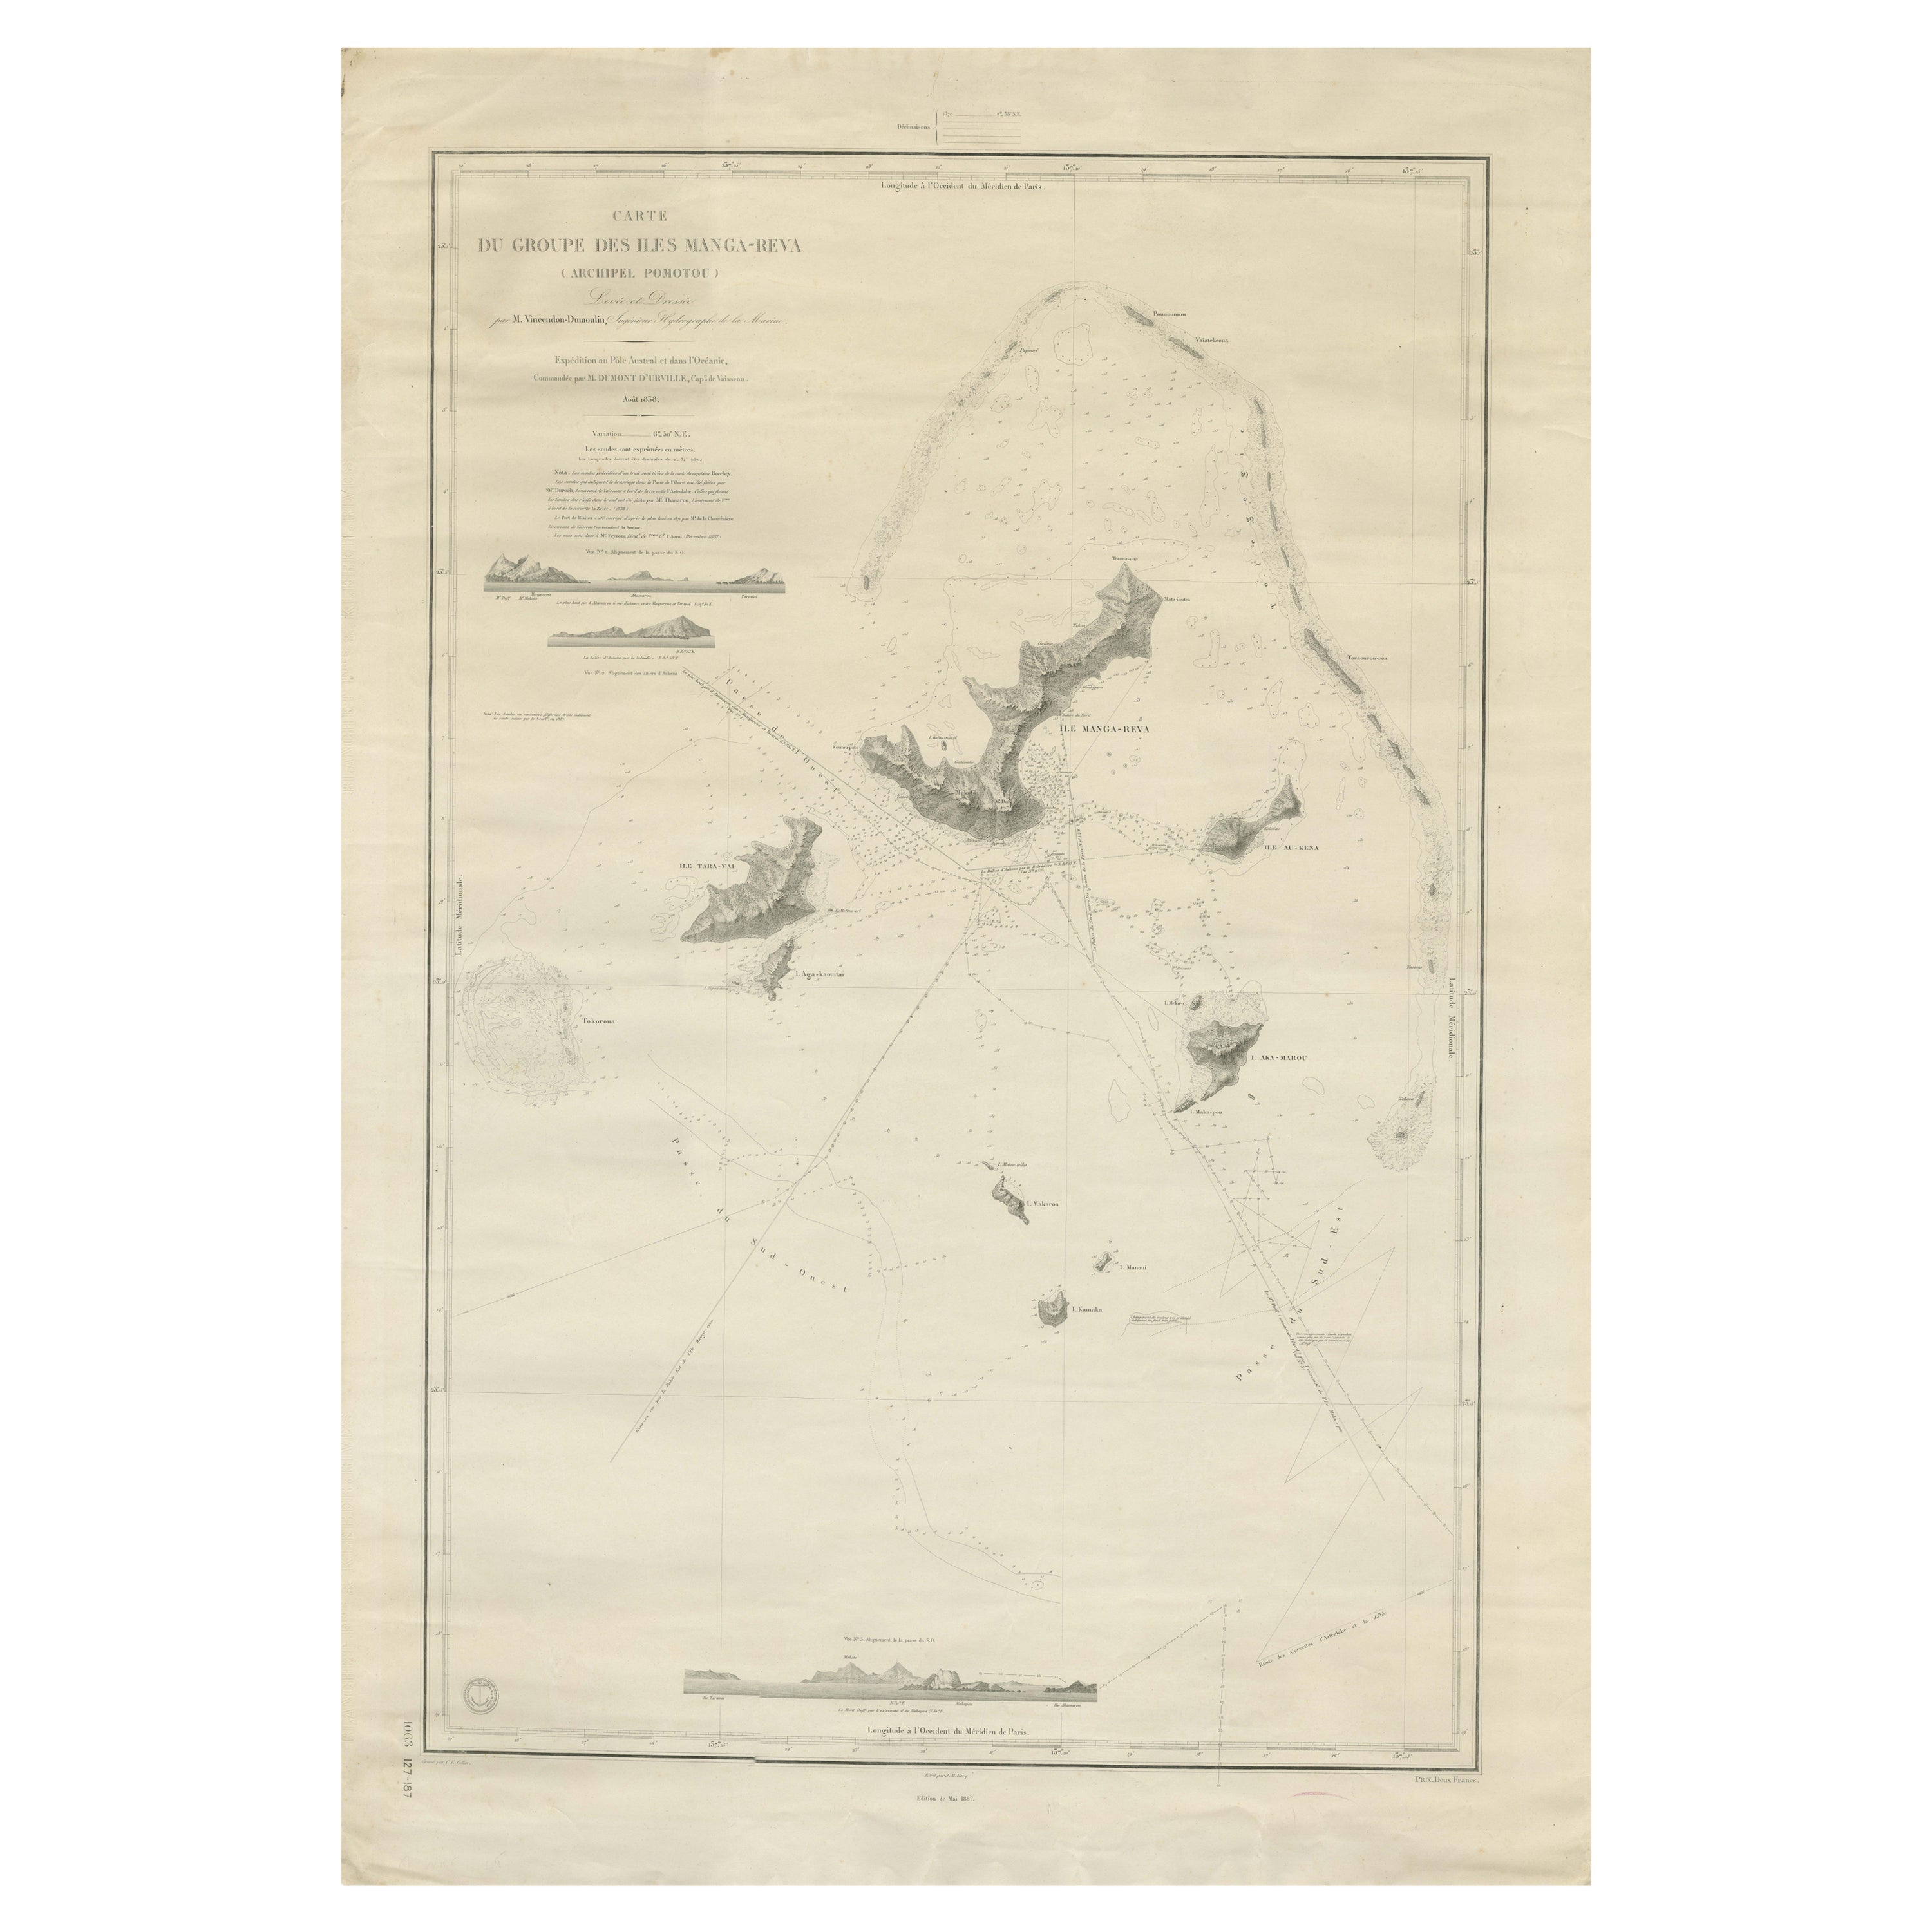 Große Karte der Gambier-Inseln, Tuamotu Archipelago, Französische Polynesia